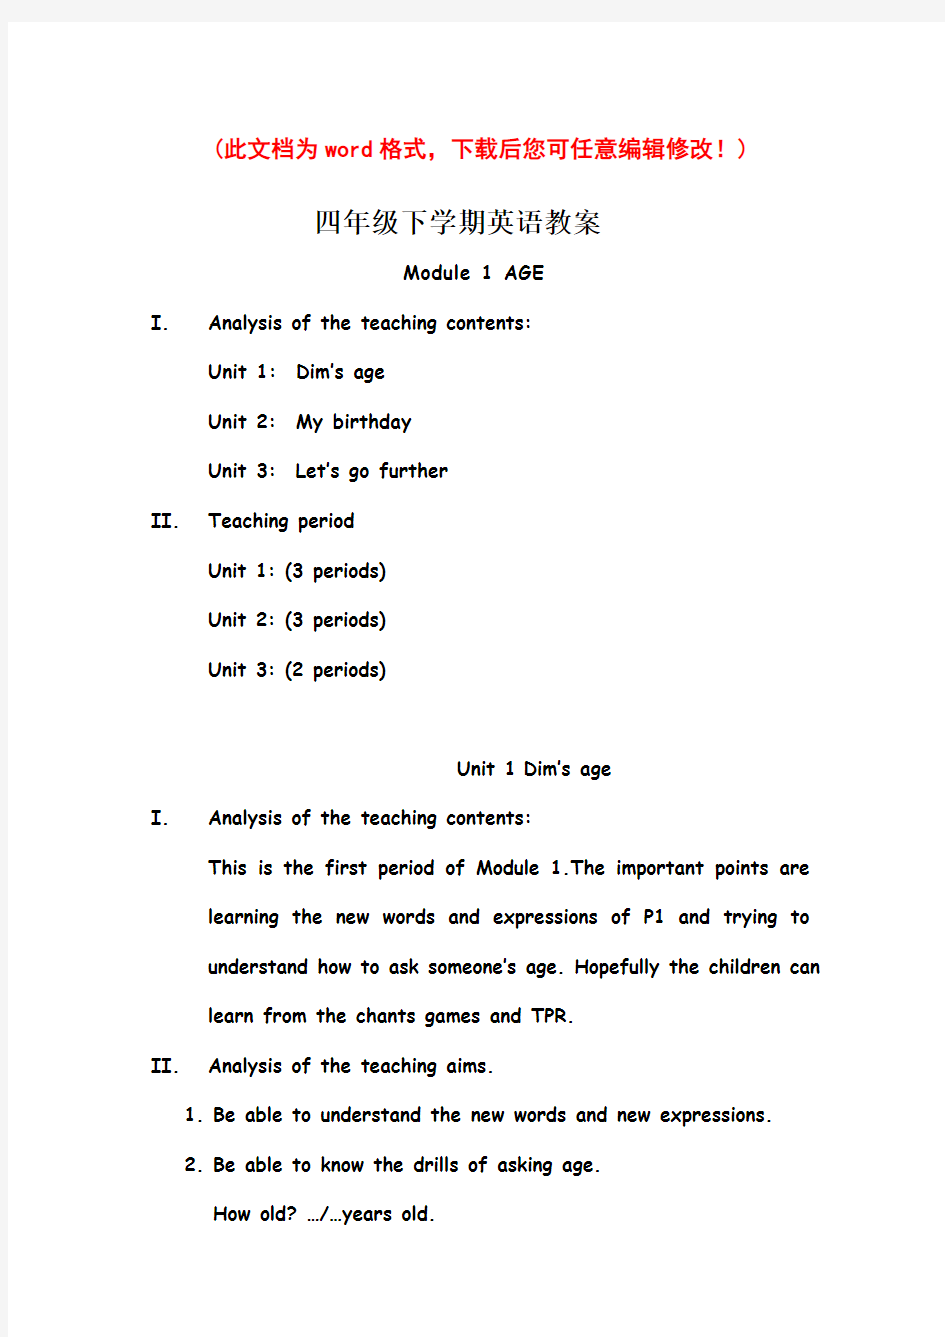 【完整打印版】广州版小学英语教案四年级下全册(全英文)